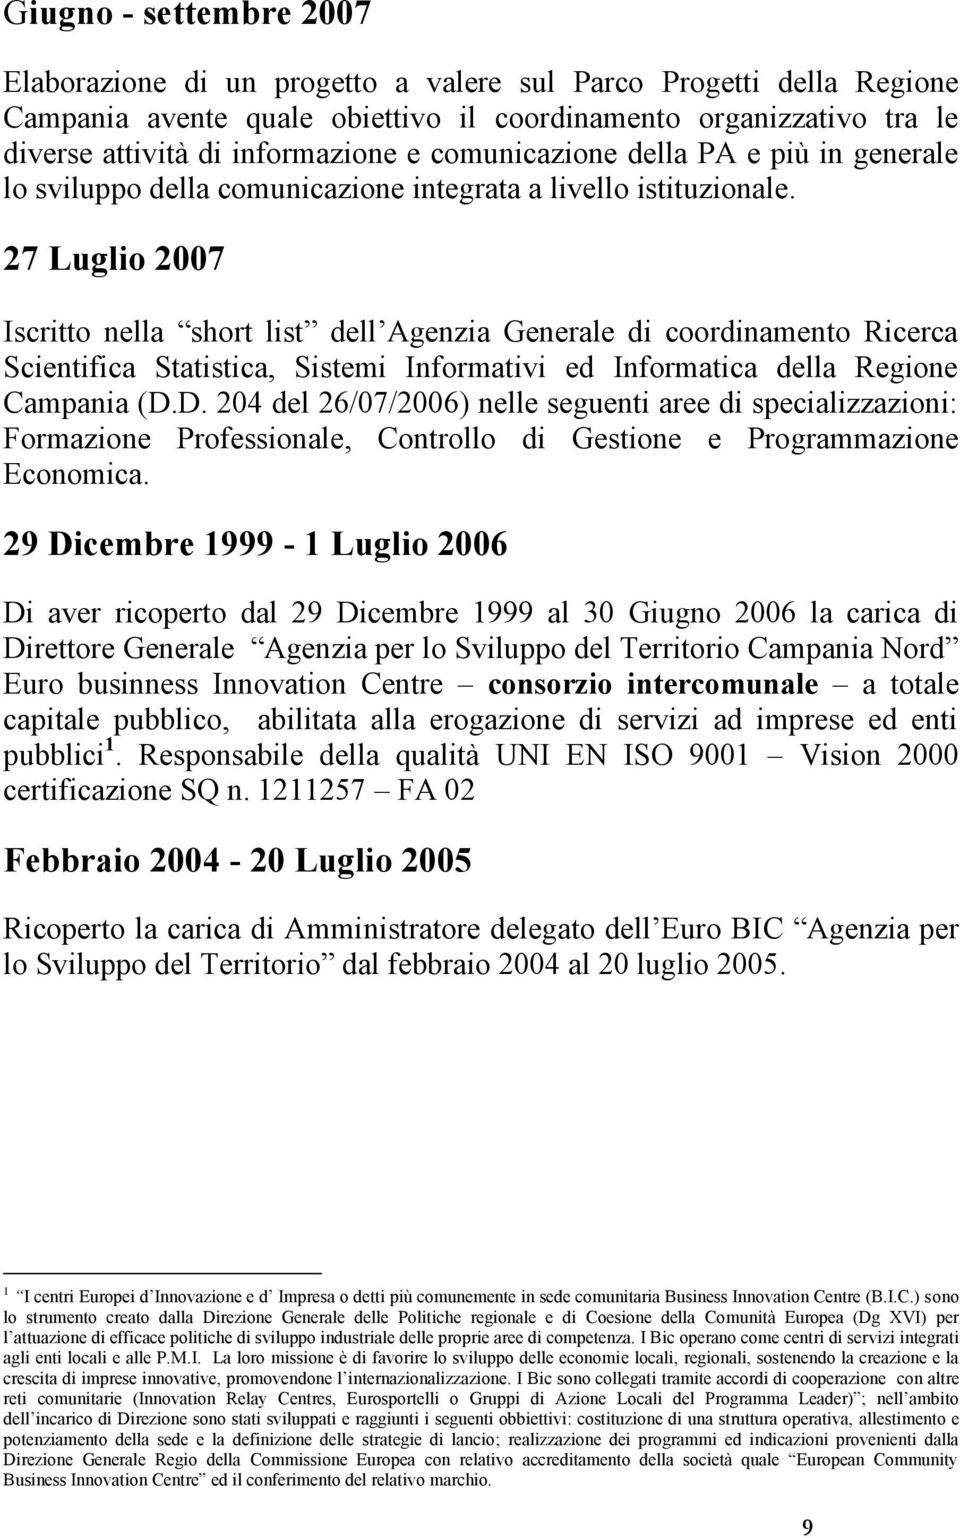 27 Luglio 2007 Iscritto nella short list dell Agenzia Generale di coordinamento Ricerca Scientifica Statistica, Sistemi Informativi ed Informatica della Regione Campania (D.